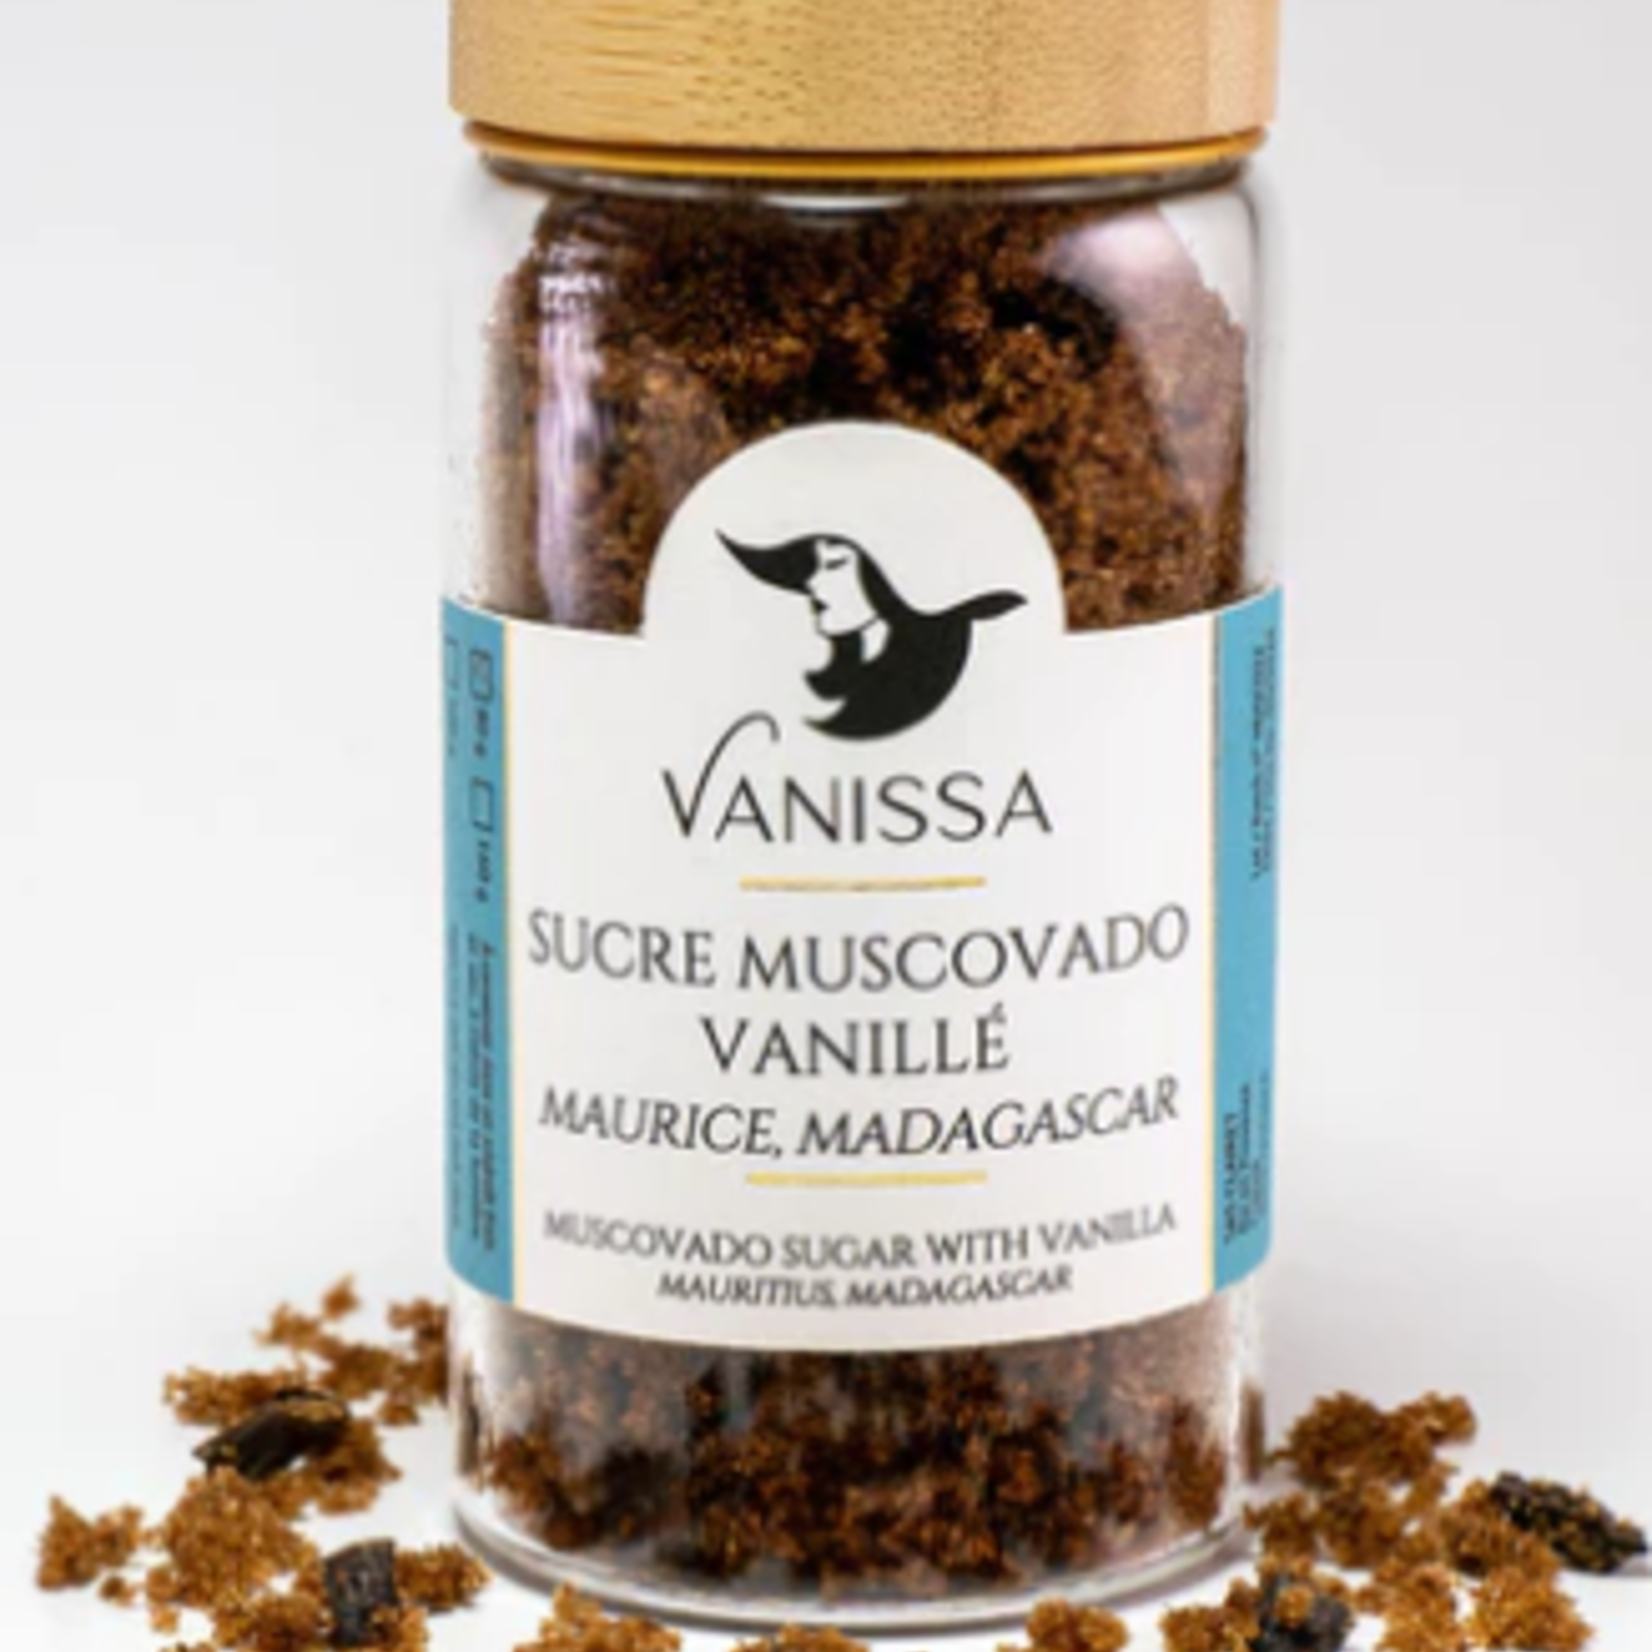 Vanissa Muscovado Sugar with Vanilla